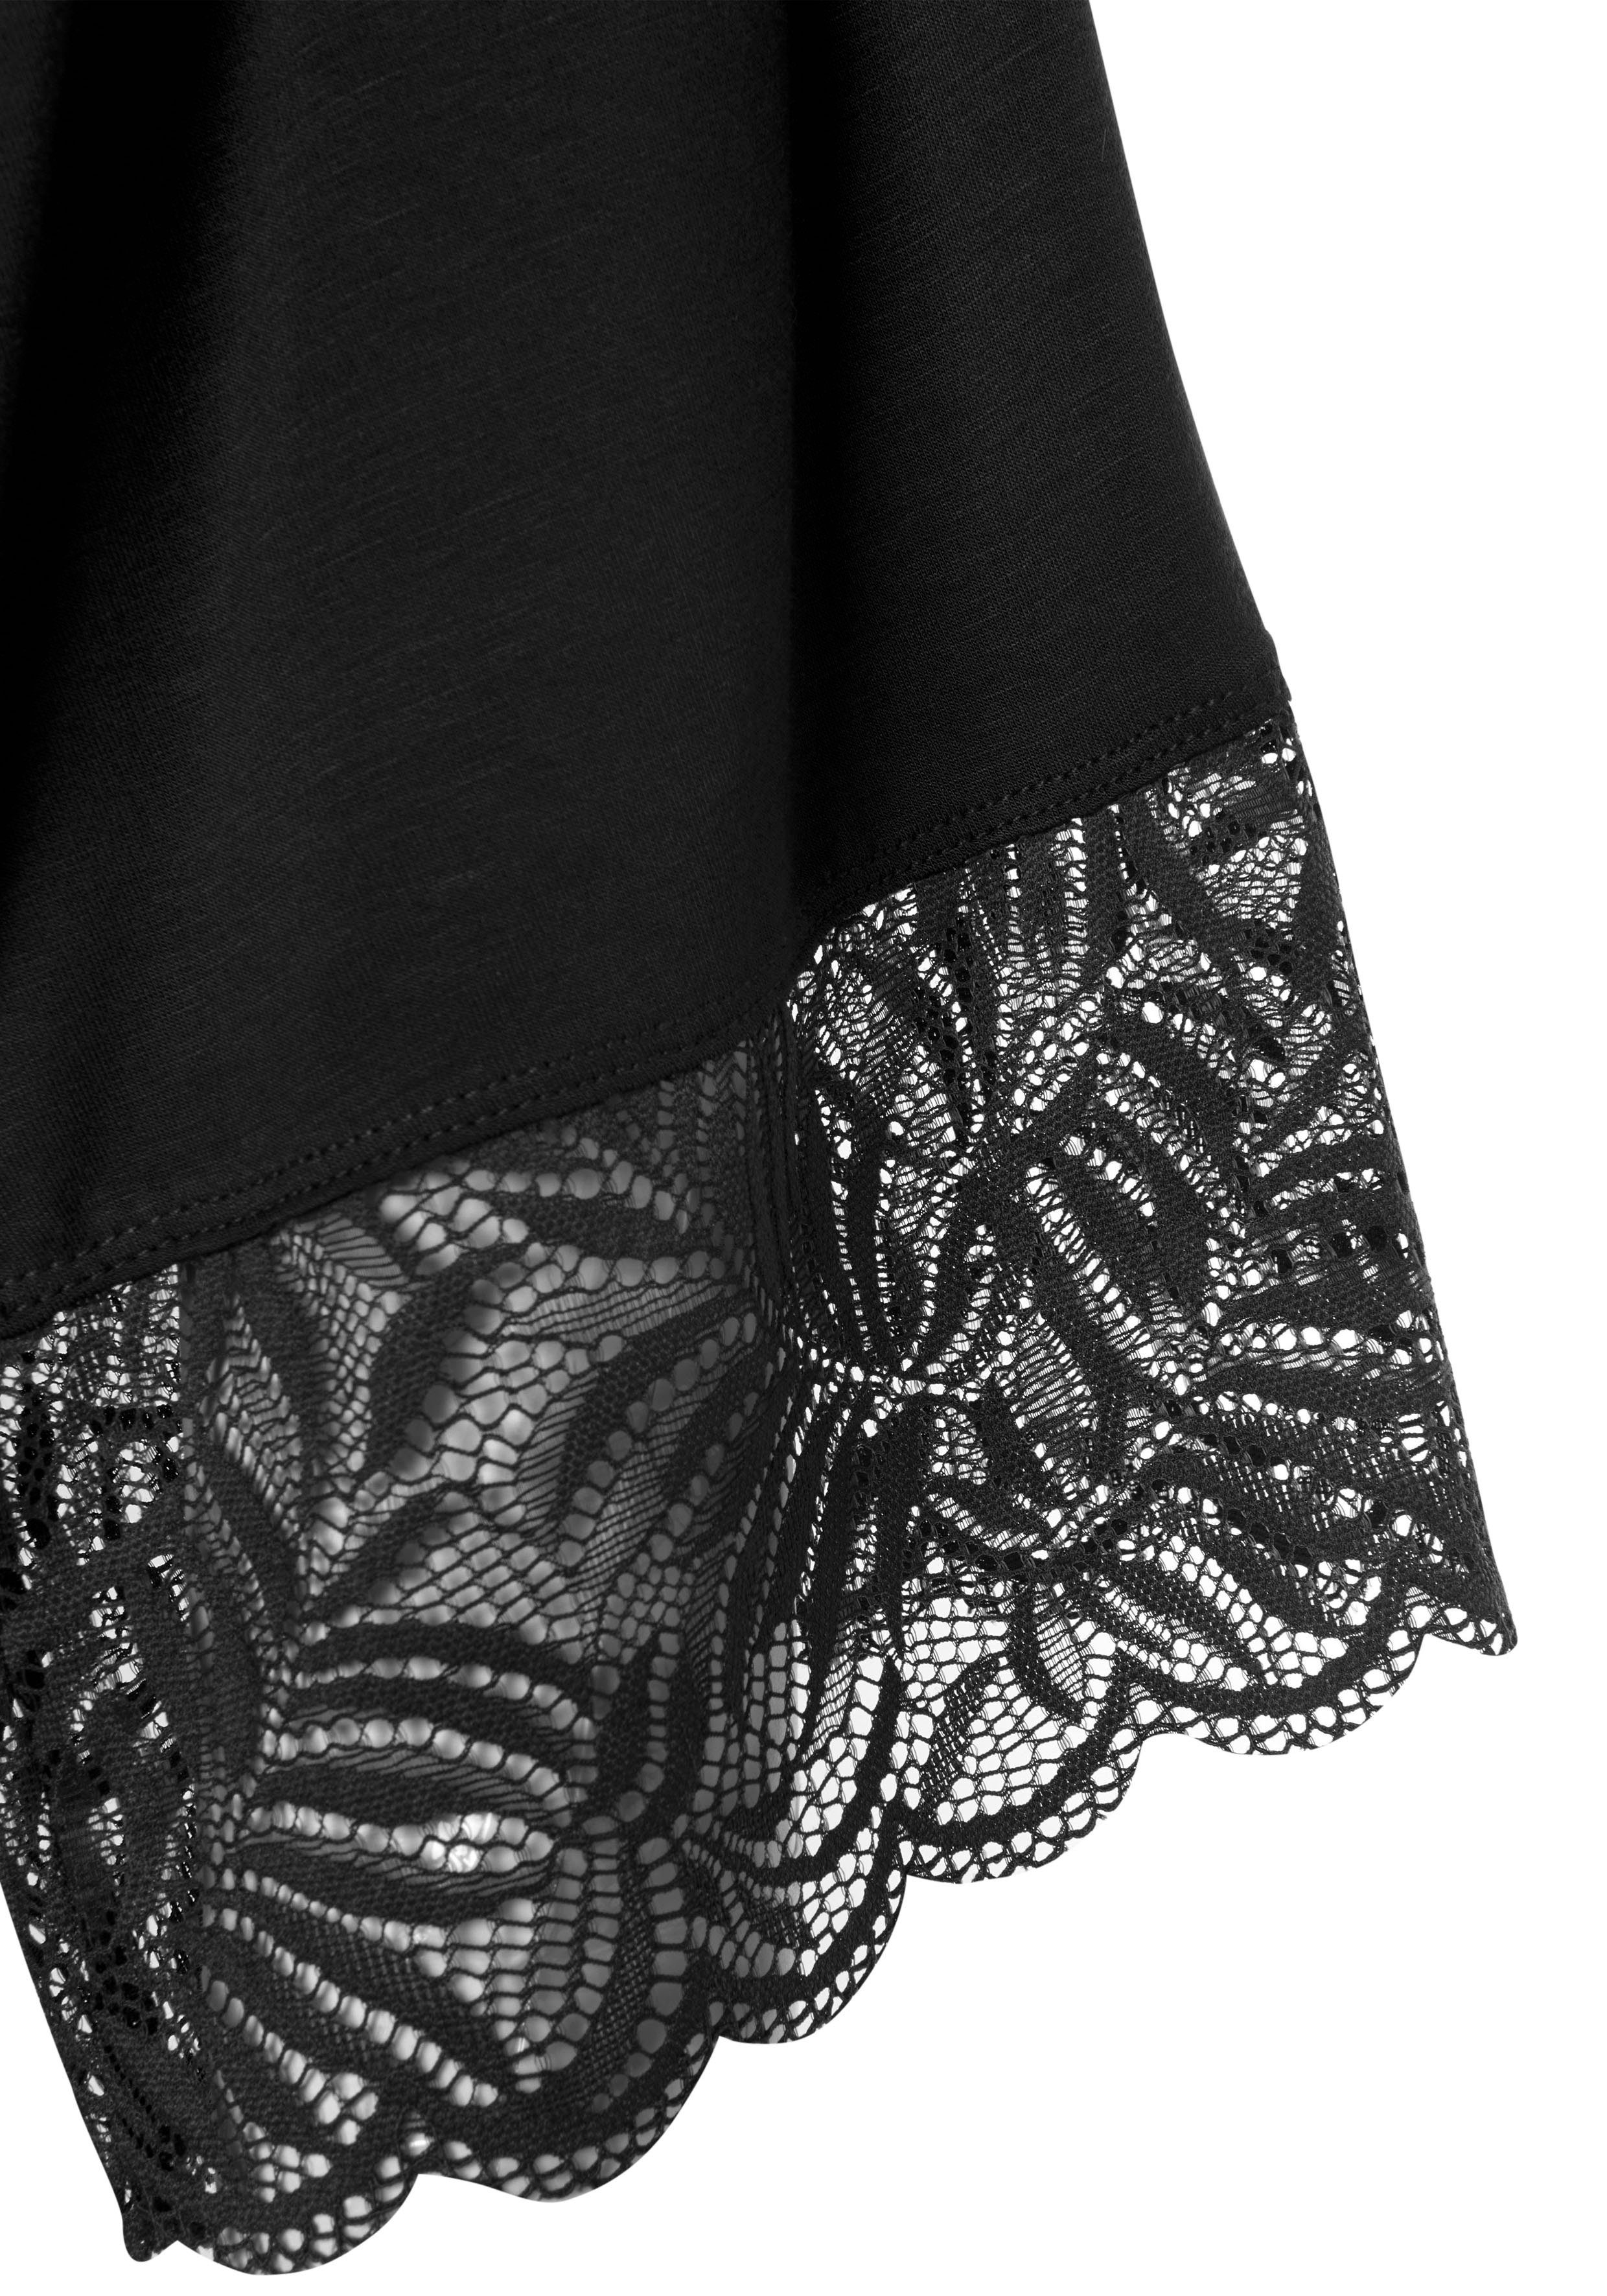 LASCANA Kimono, Kurzform, schwarz Kimono-Kragen, schönen Gürtel, Viskose, Spitzendetails mit